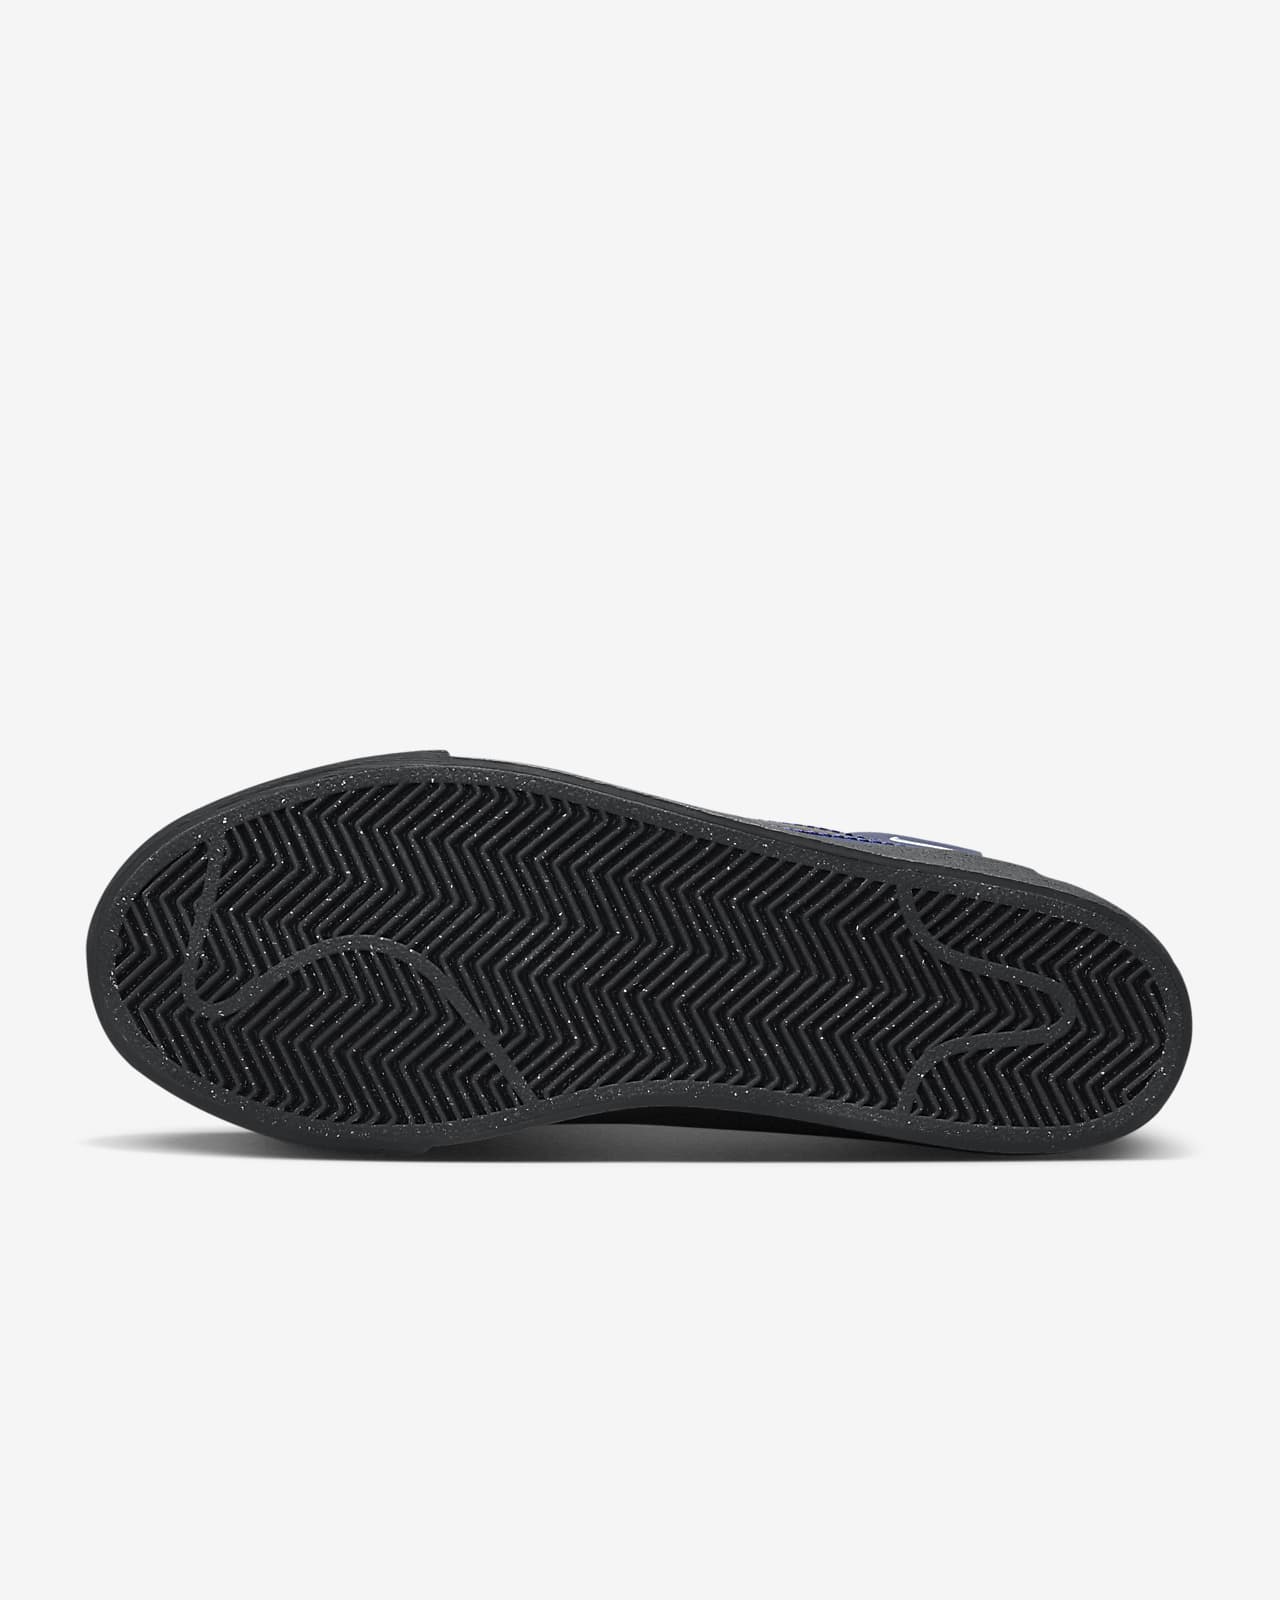 Nike SB Zoom Blazer Mid Premium Skate Shoes.